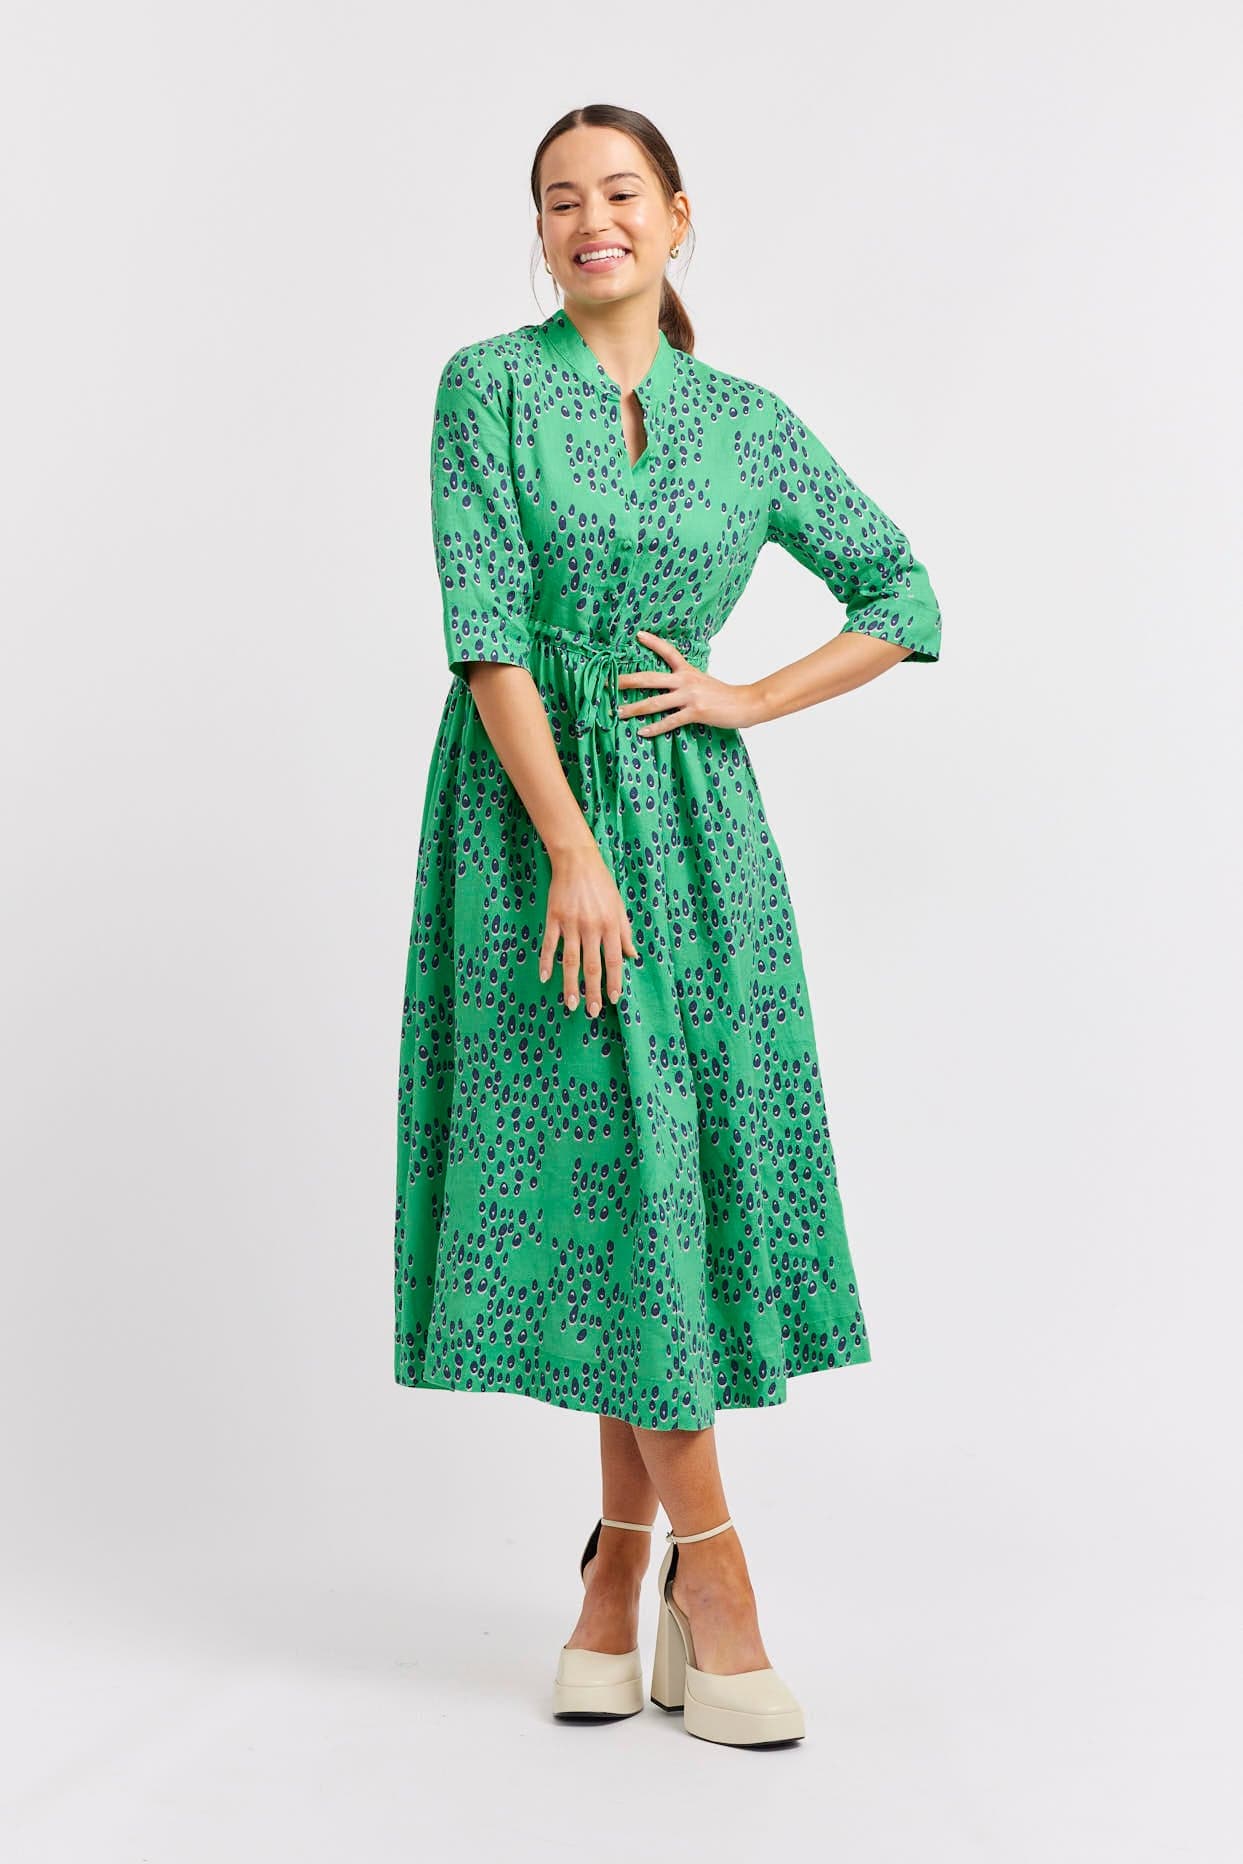 Linen Dress Long, Linen Dresses for Women With Collar, Green